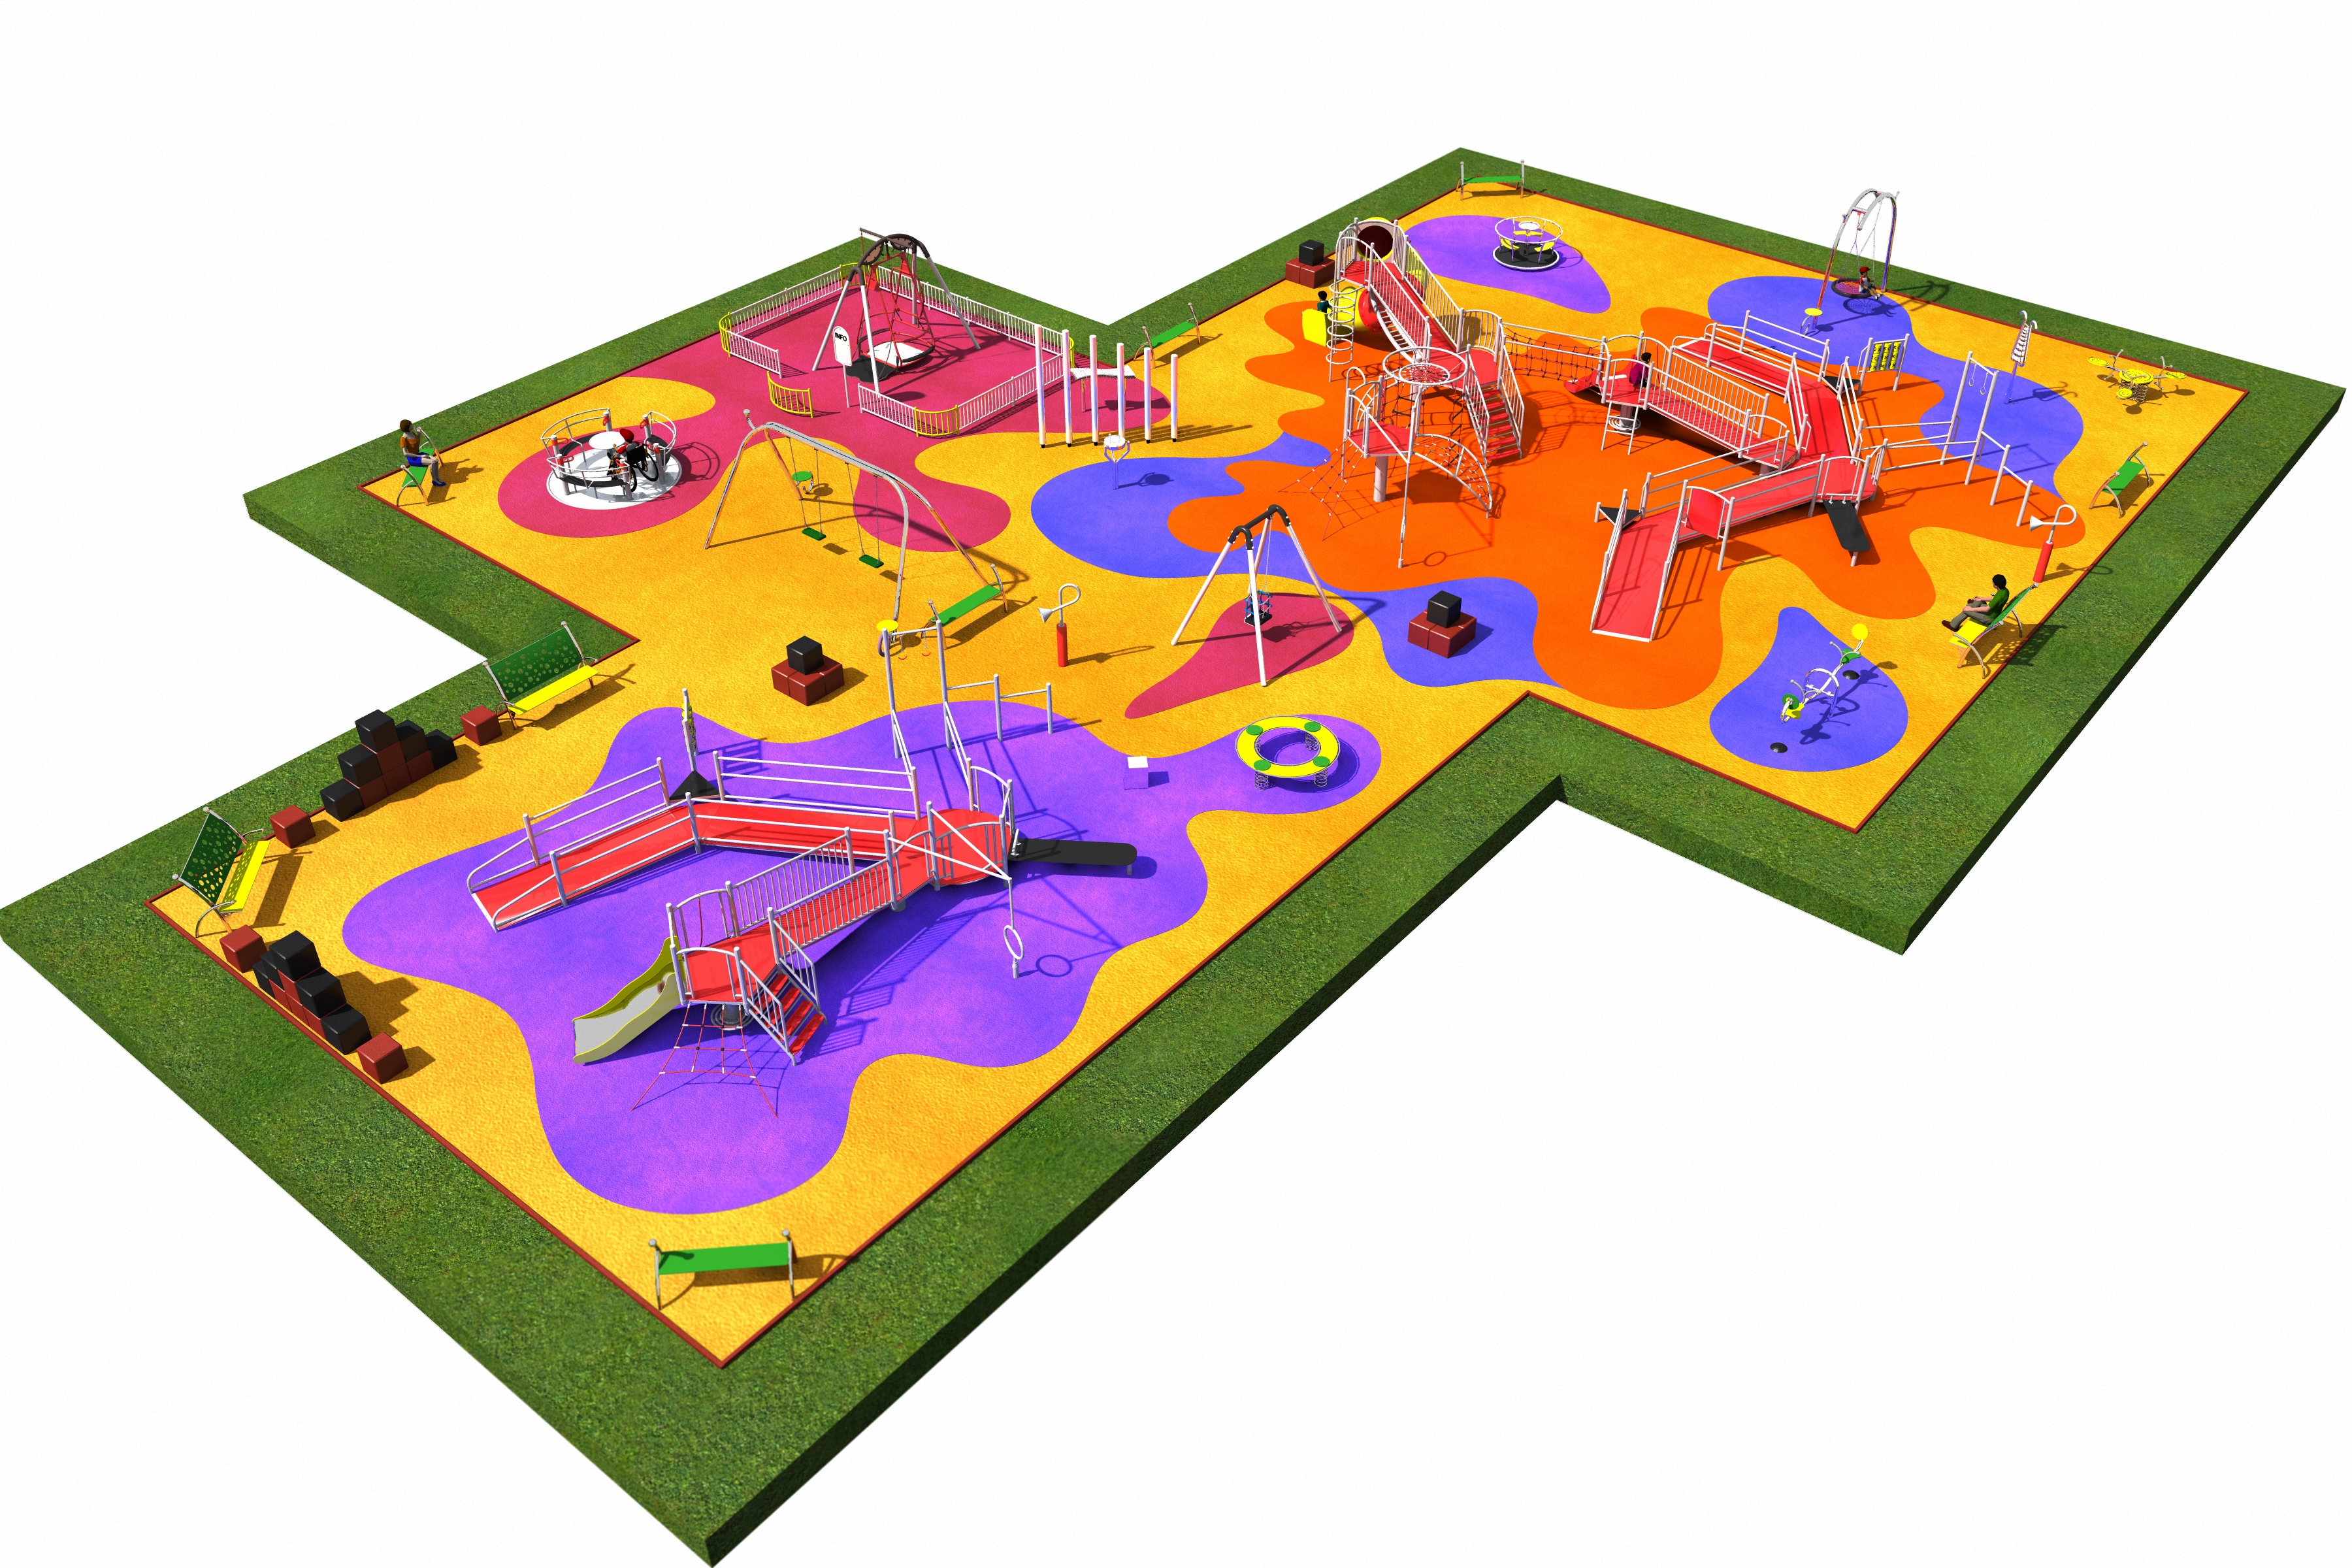 Playground image